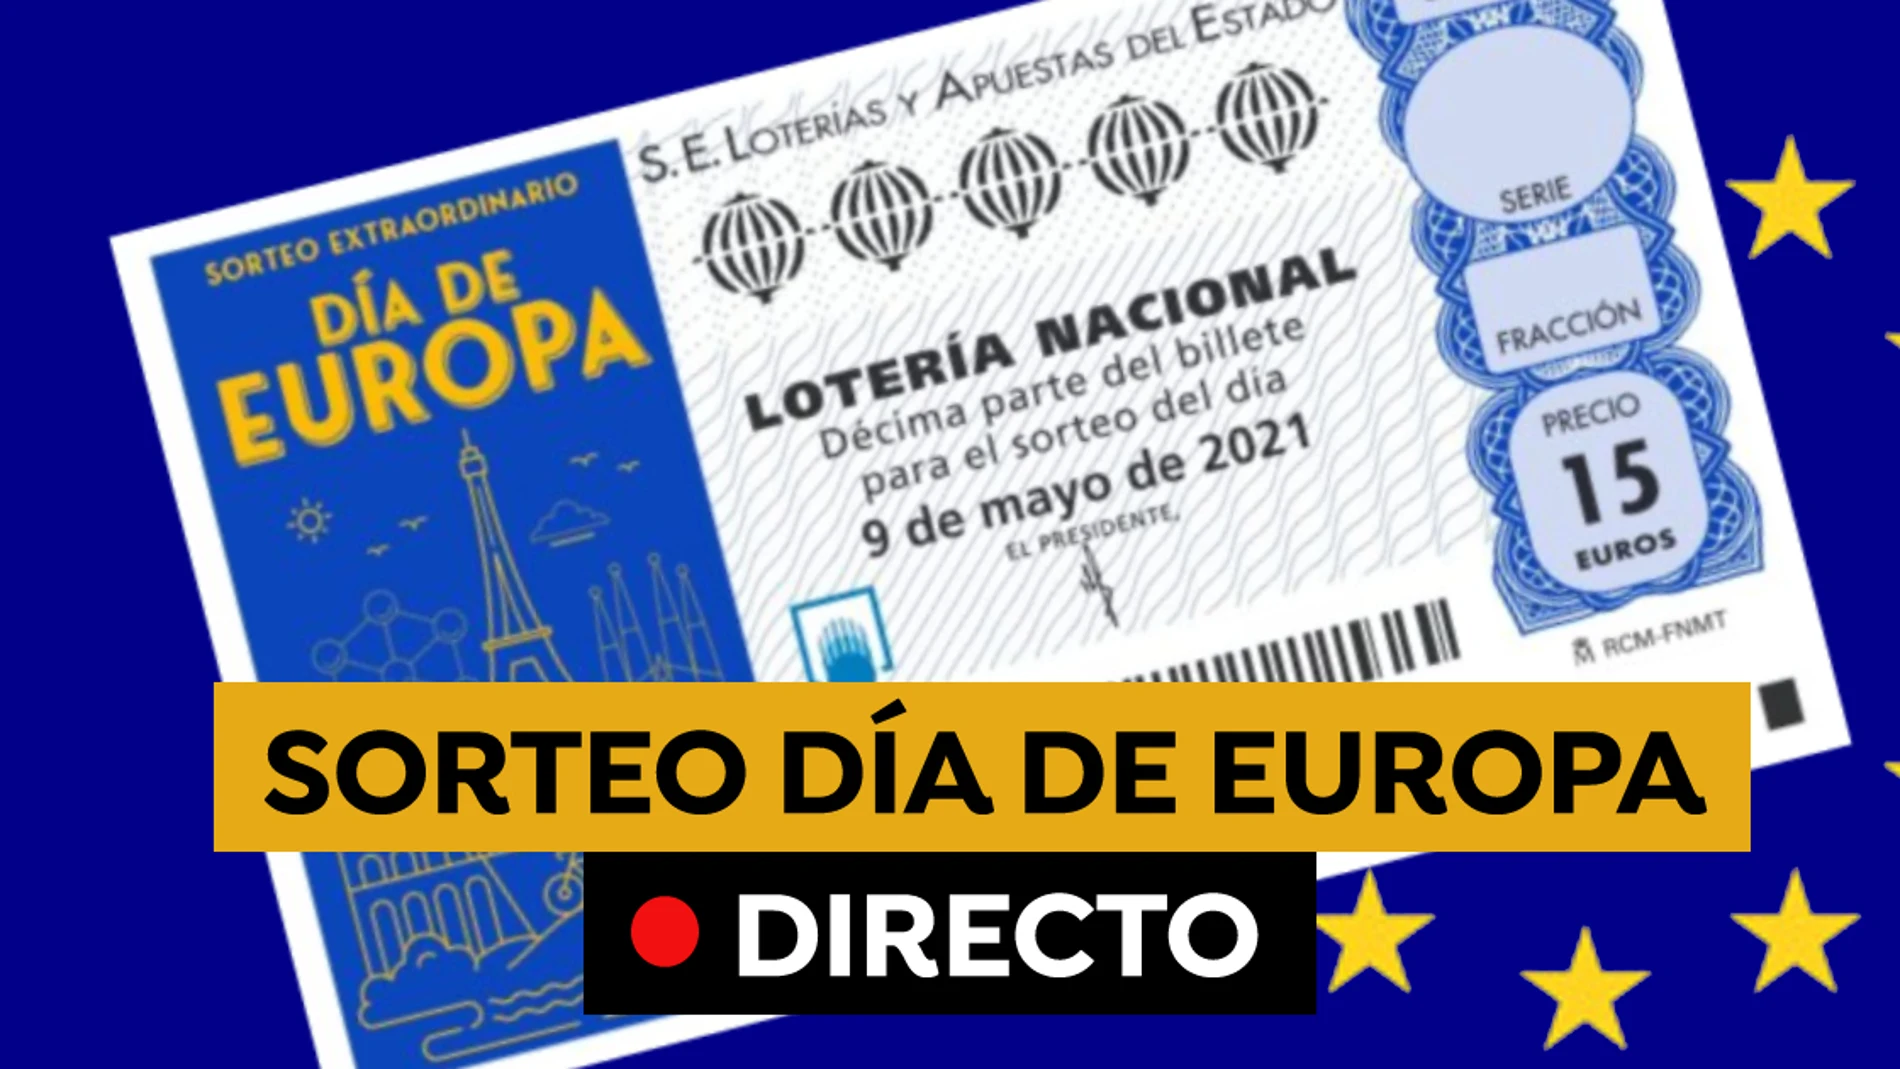 Lotería Nacional: Comprobar resultado del sorteo extraordinario del Día de Europa de hoy 9 de mayo, en directo